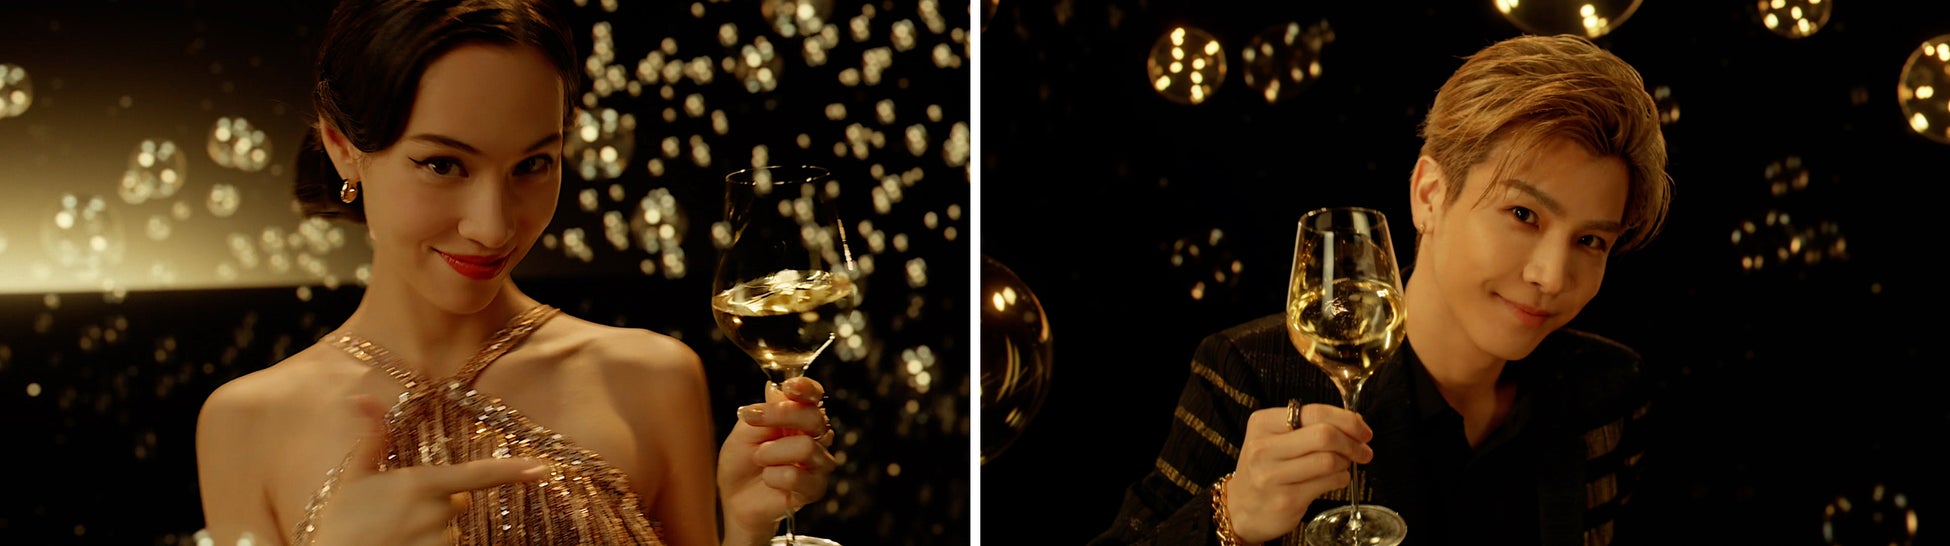 モエ・エ・シャンドン フレンズ オブ ザ ハウスの水原希子さん、岩田剛典さんによるホリデースペシャルムービー「モエ・エ・シャンドン “エフェルヴェソンス” シャンパンの魔法と輝きを」が完成